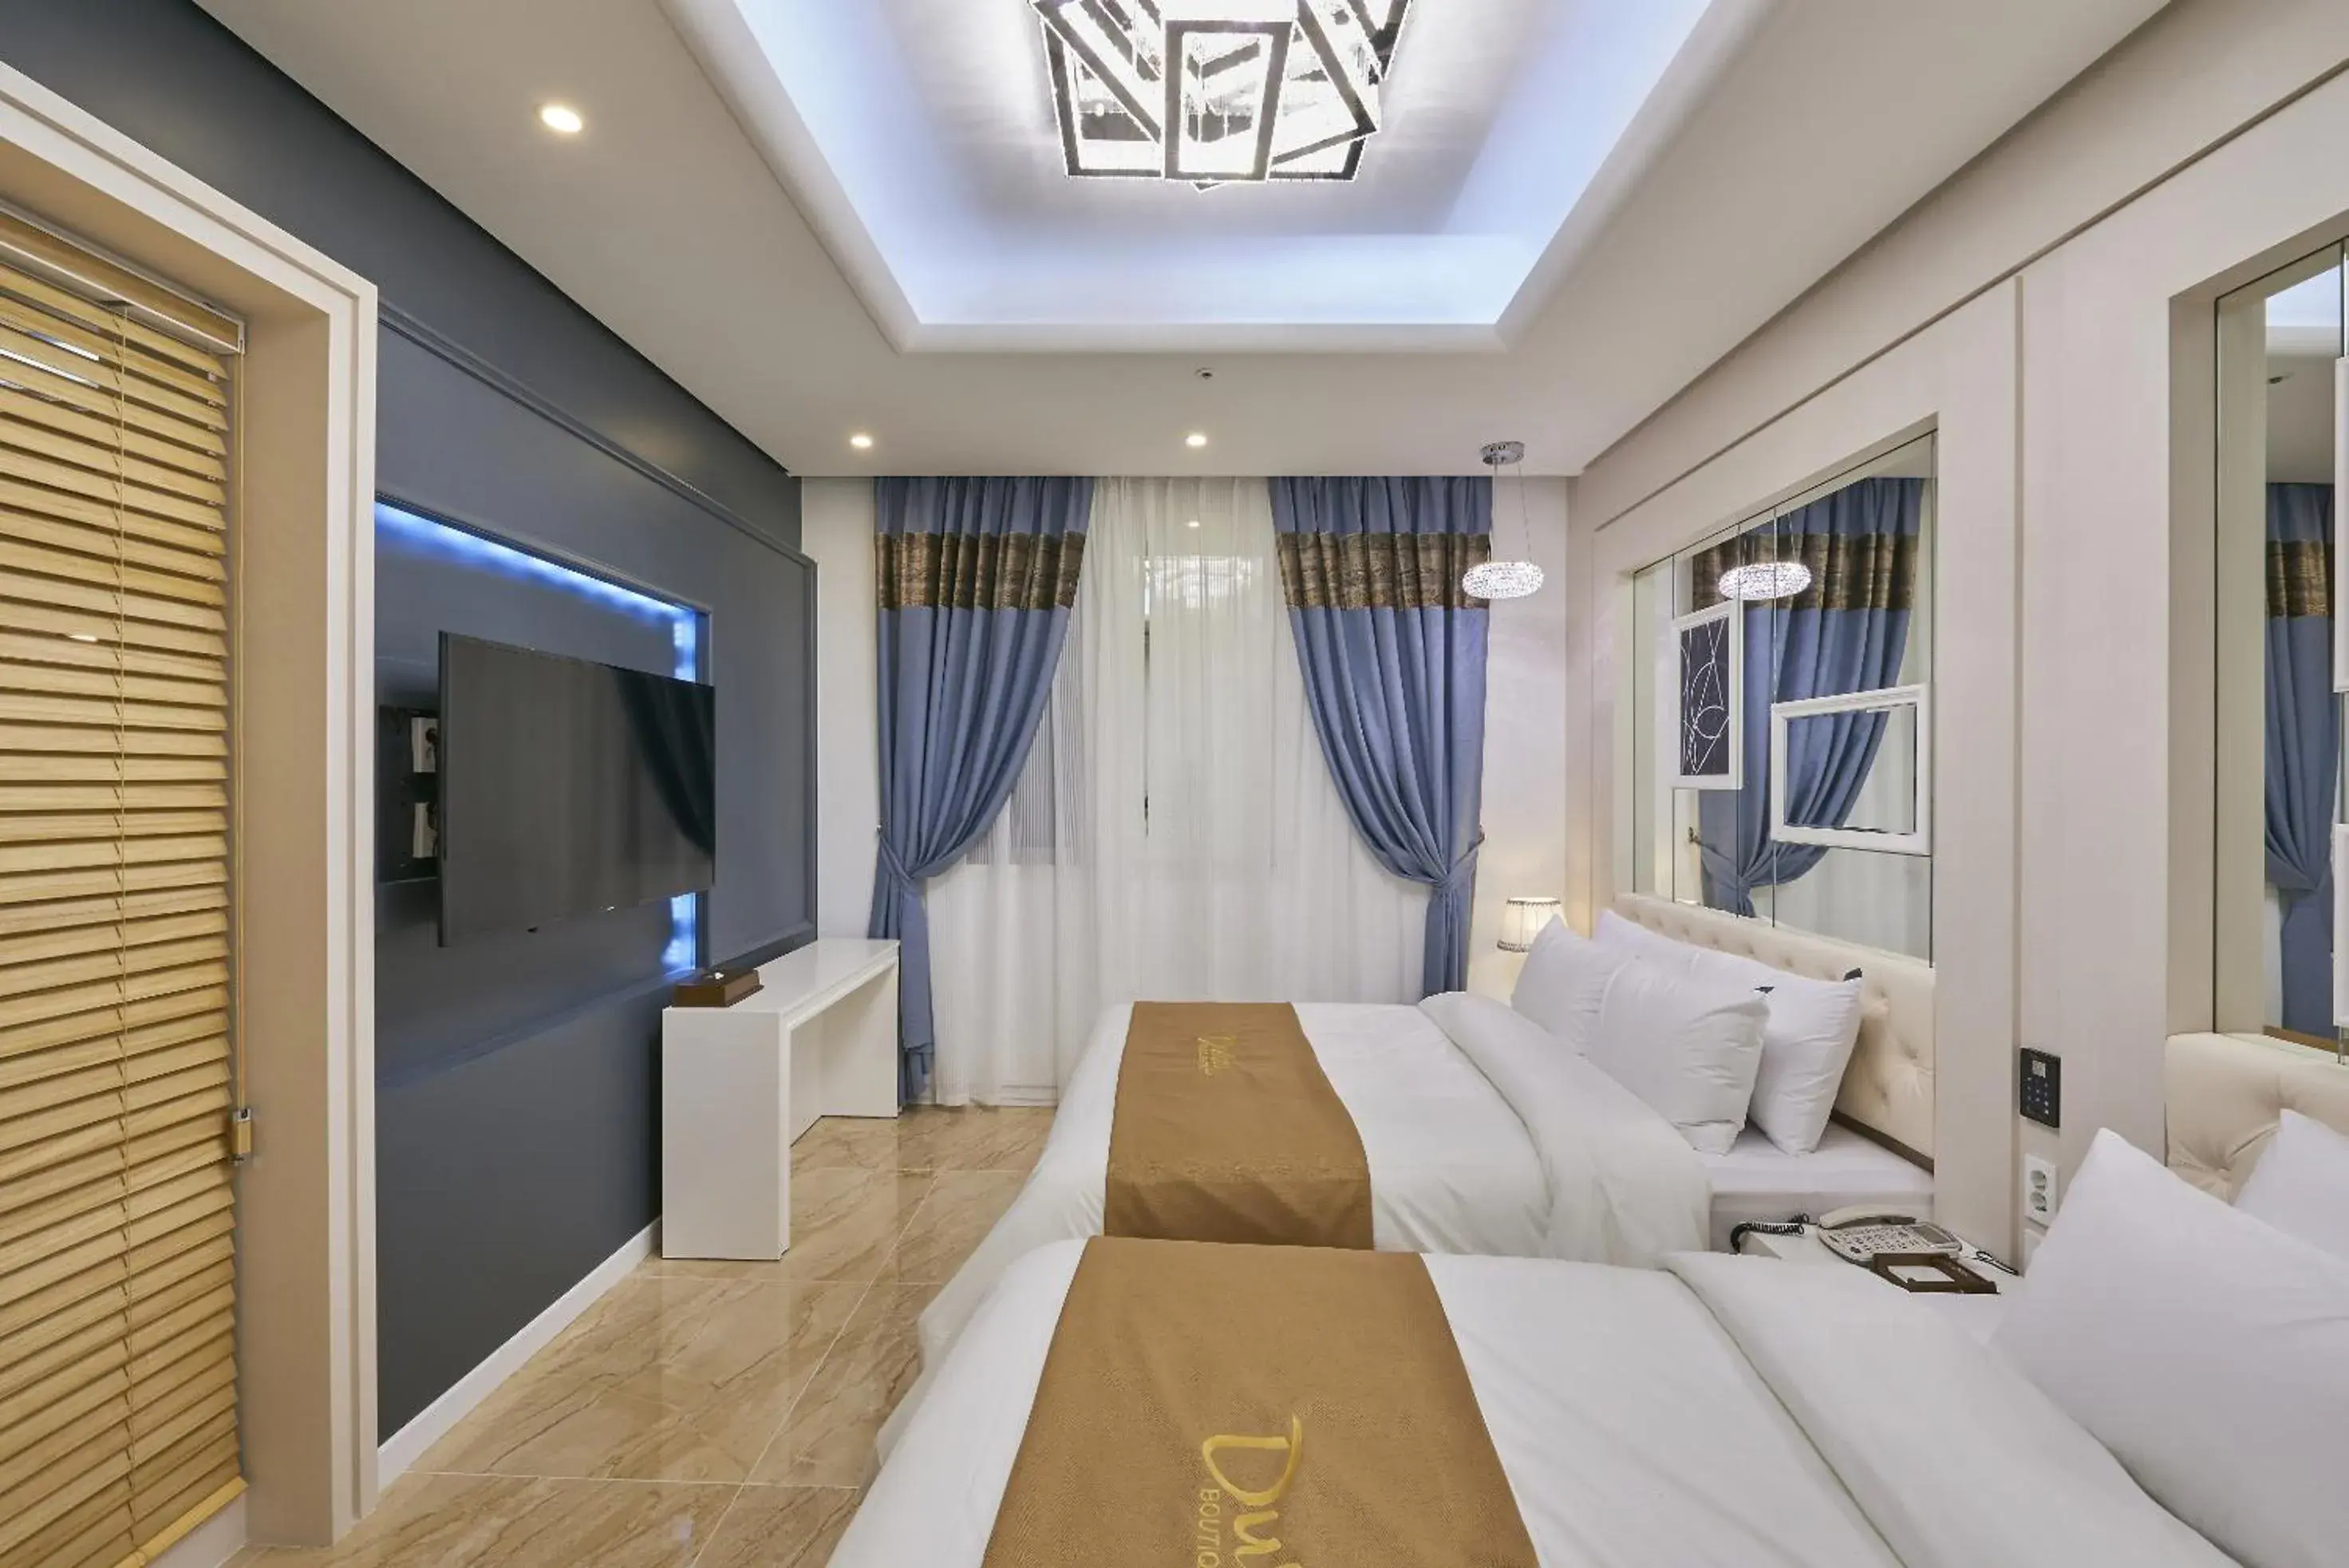 Photo of the whole room in Dubai Hotel (Korea Quality)